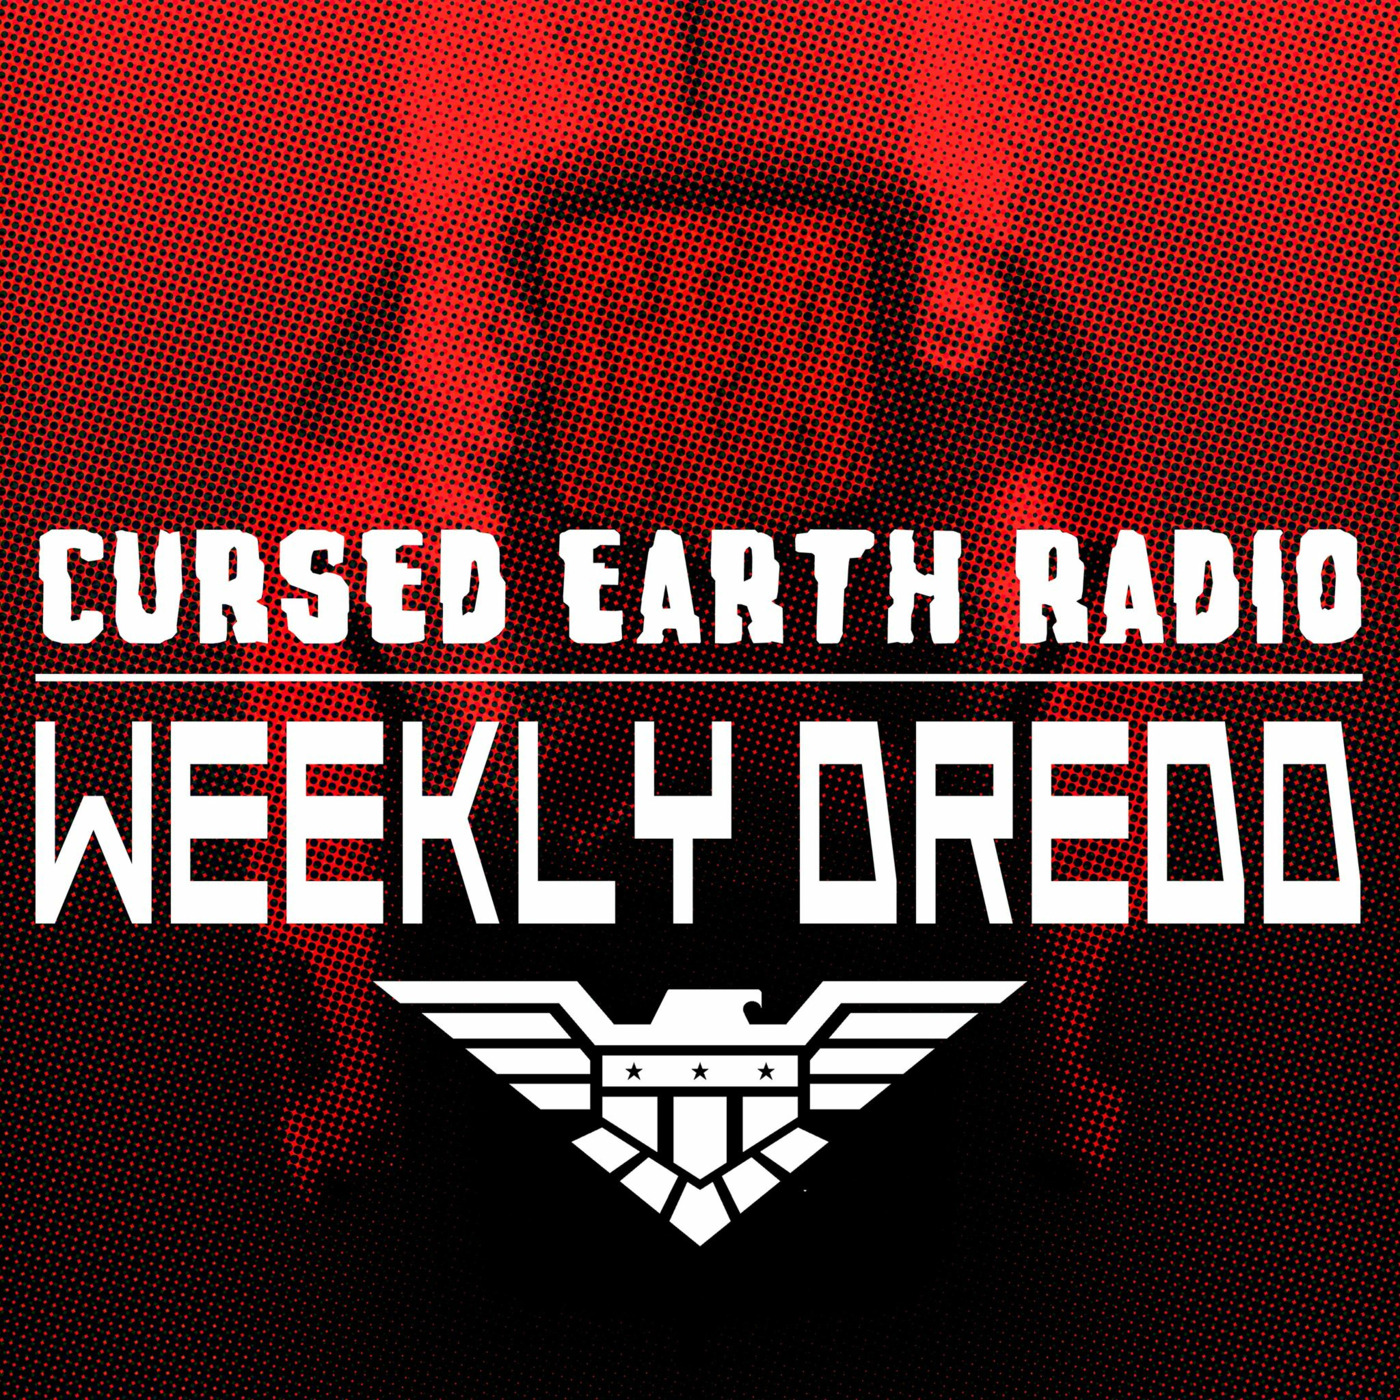 Weekly Dredd #65